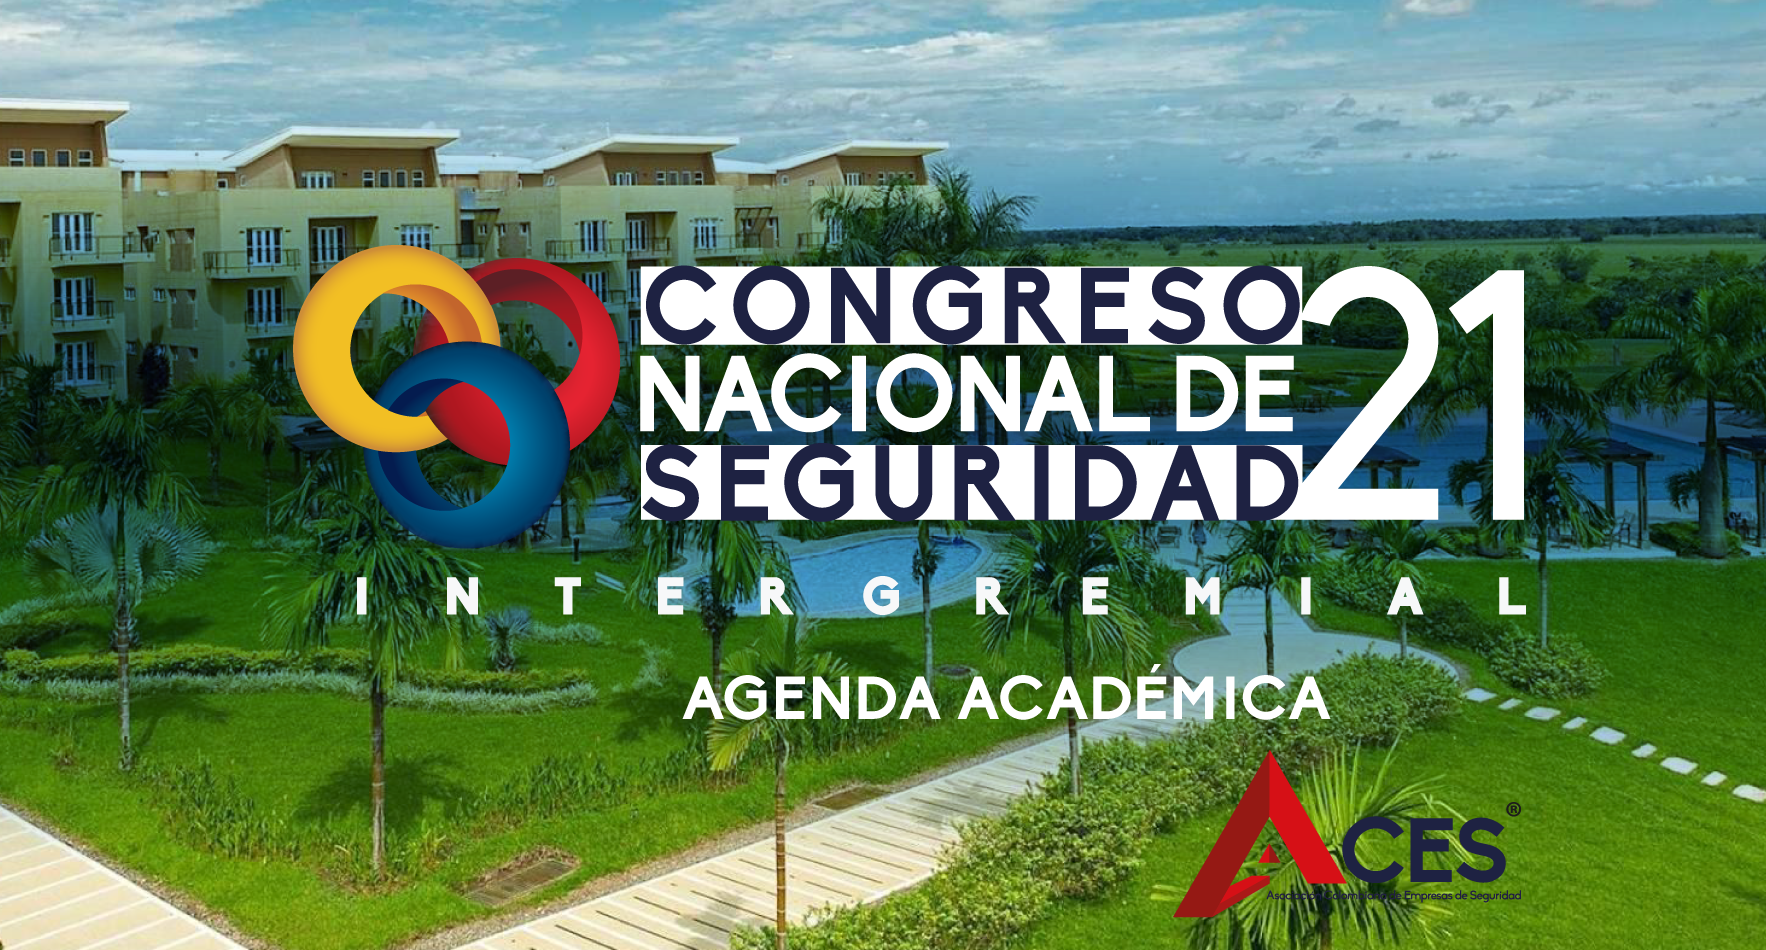 Congreso Nacional de Seguridad Intergremial 2021 – Agenda Académica